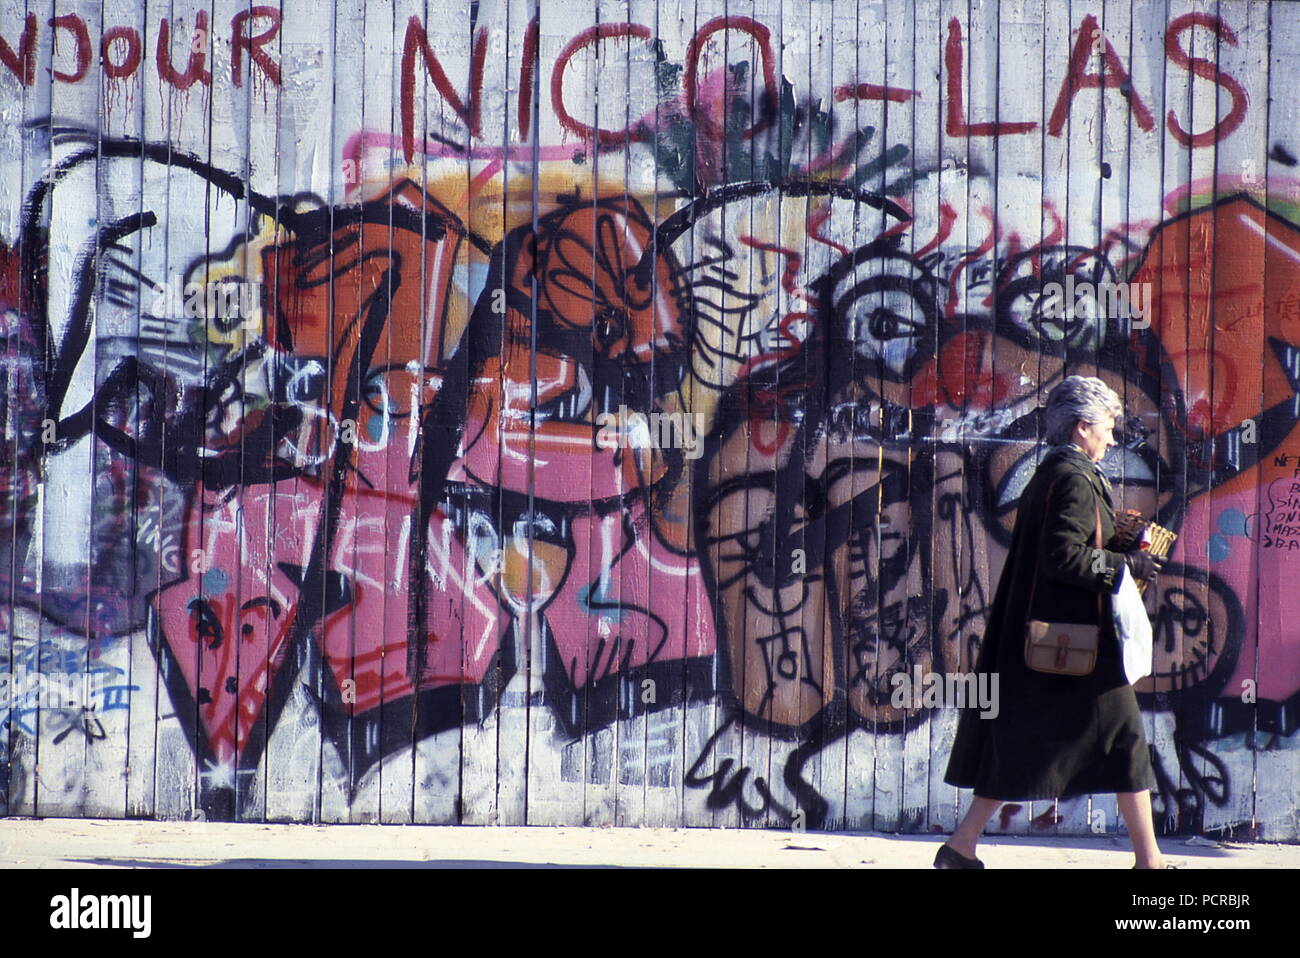 AJAXNETPHOTO. 1985. Parigi, Francia. - Arte dei graffiti - donna cammina passato GRAFITTI immagini dipinte su un sito in costruzione tavolato in legno palizzata nel centro della citta'. Foto:JONATHAN EASTLAND/AJAX REF:891391 Foto Stock